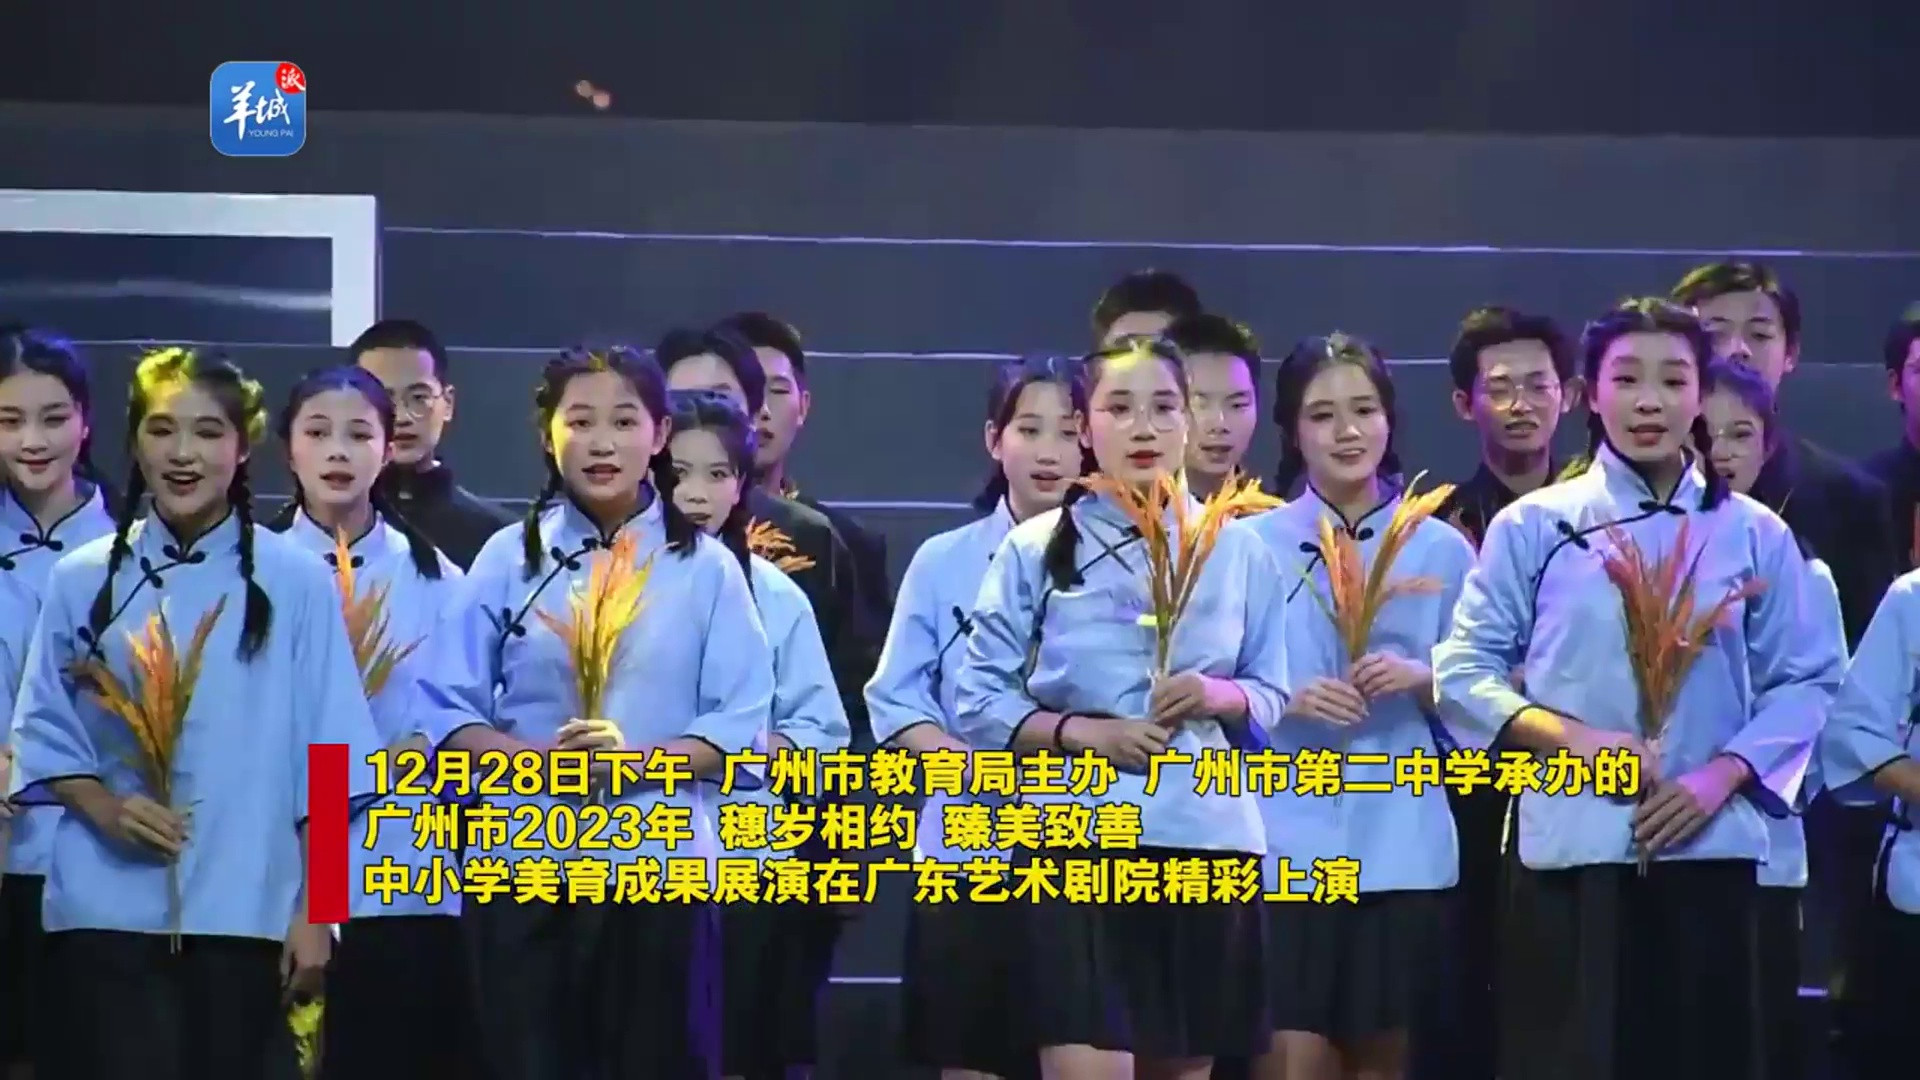 [视频]穗岁相约! 广州市2023年中小学美育成果展演